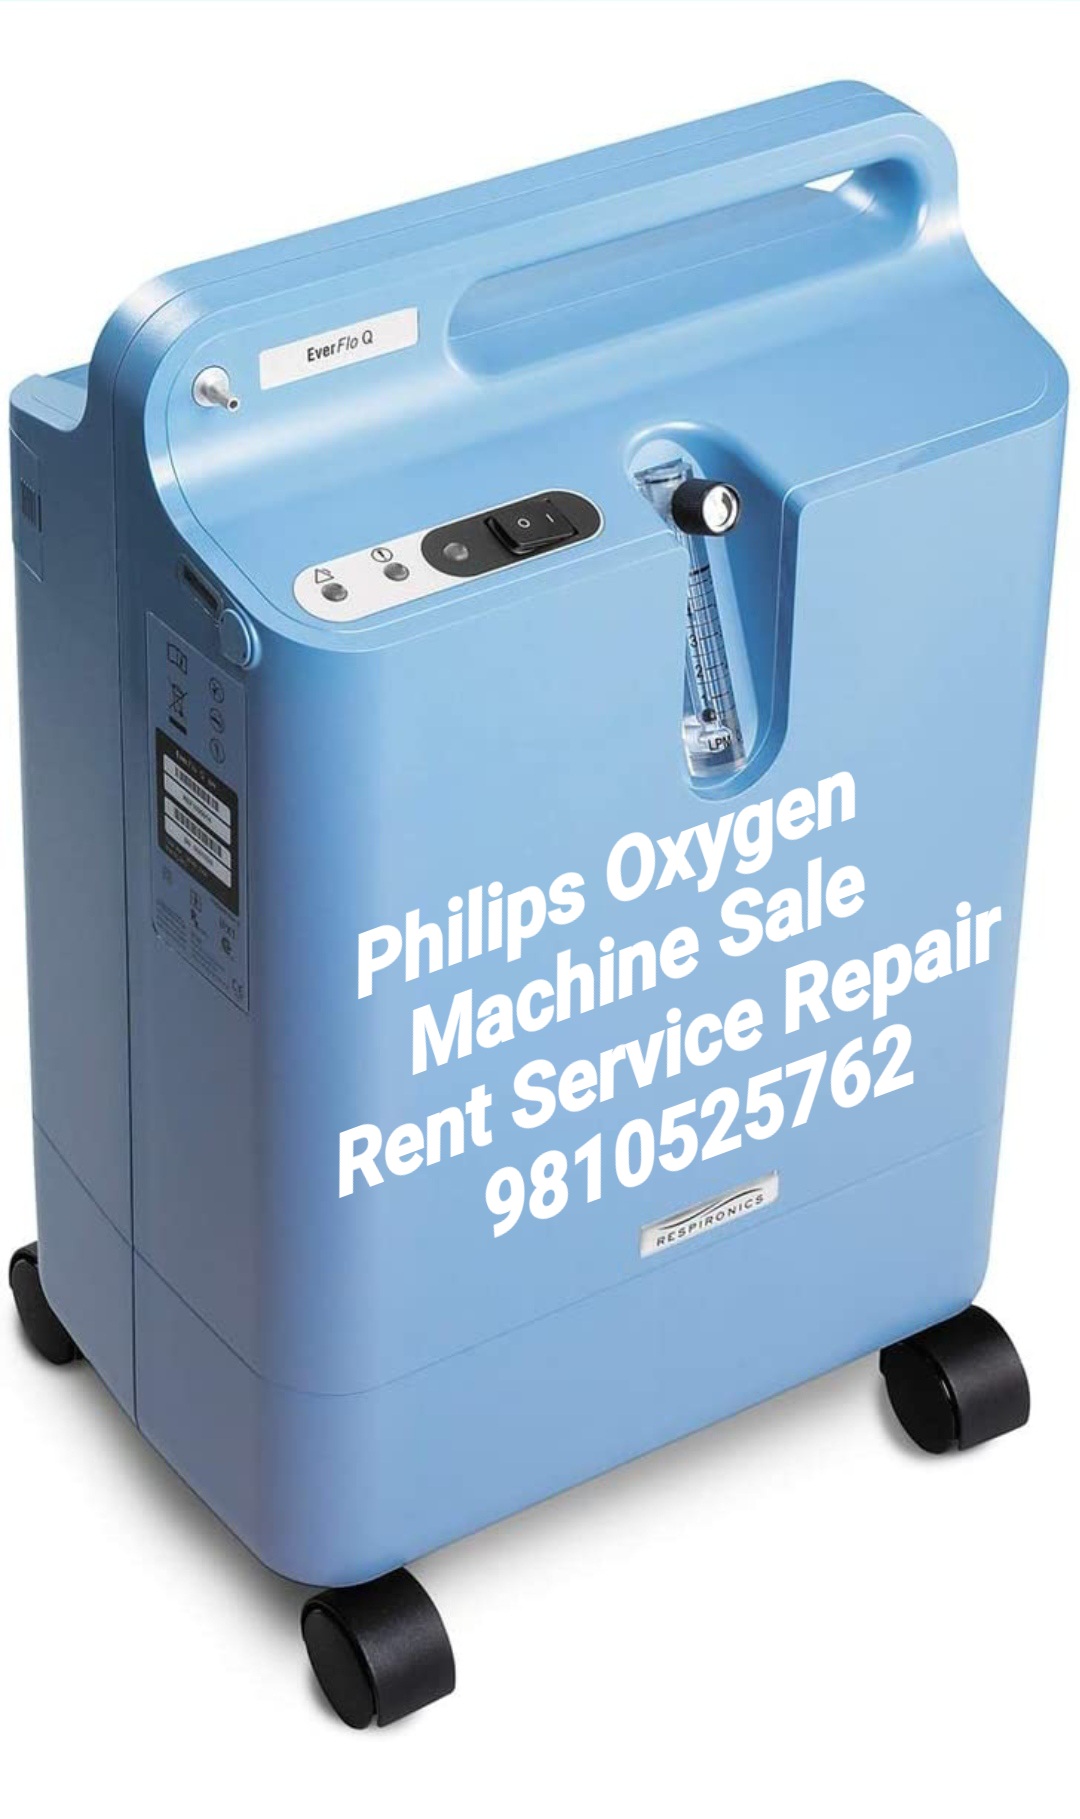 8178463439 oxygen machine on rent 8178463439